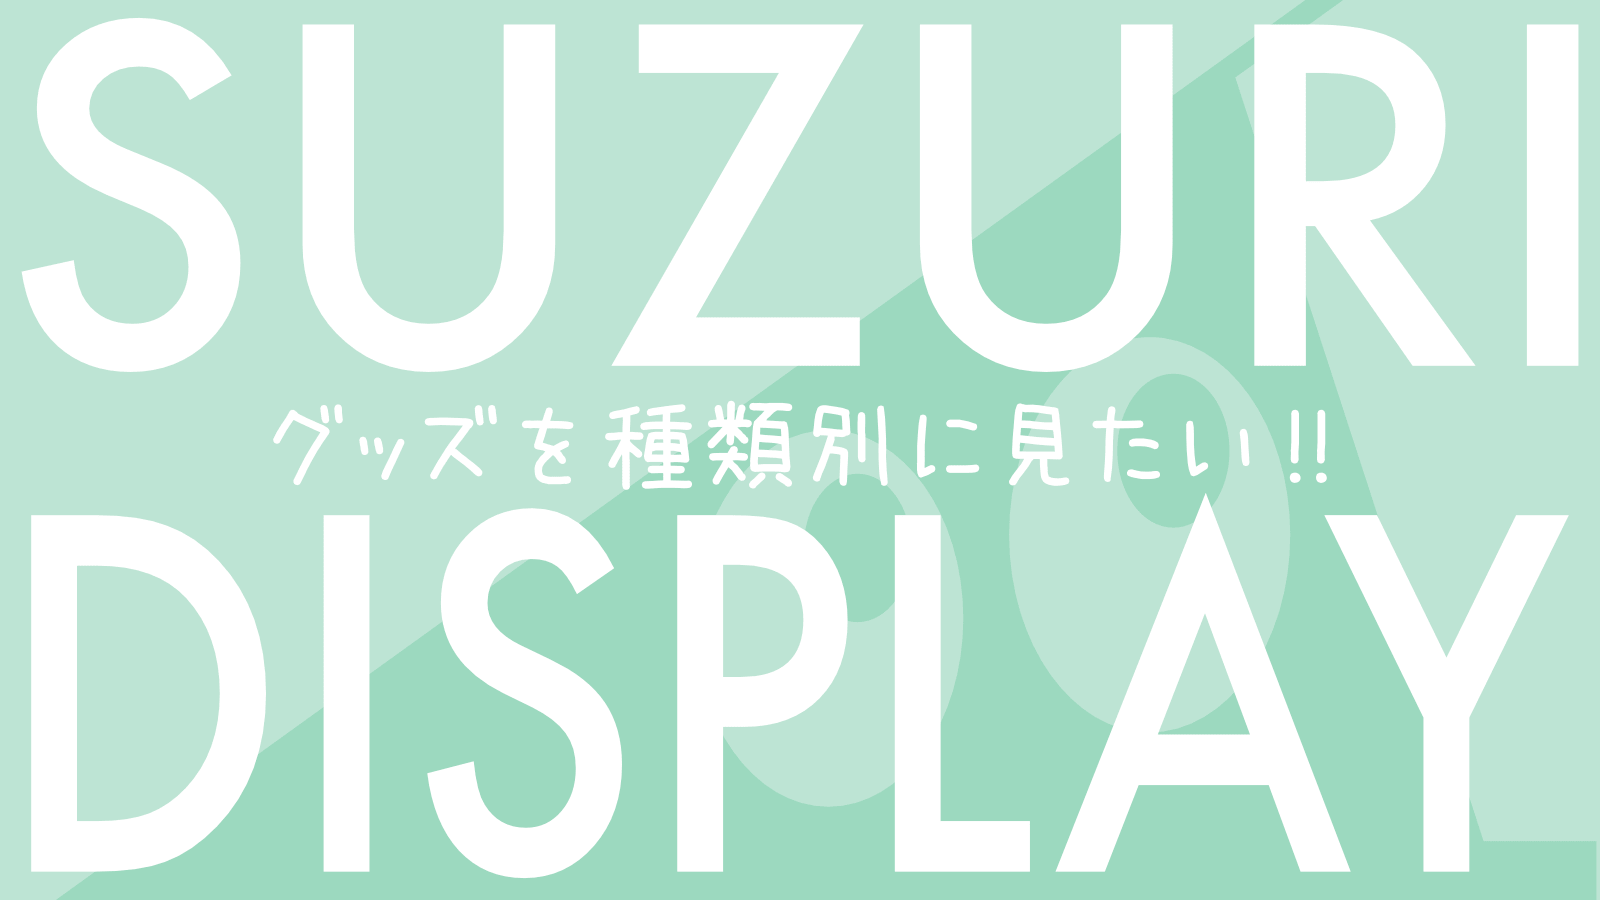 「SUZURIにある "あのひと" の "あのグッズ" を探したい！」をお手伝いするサービスを公開しています。